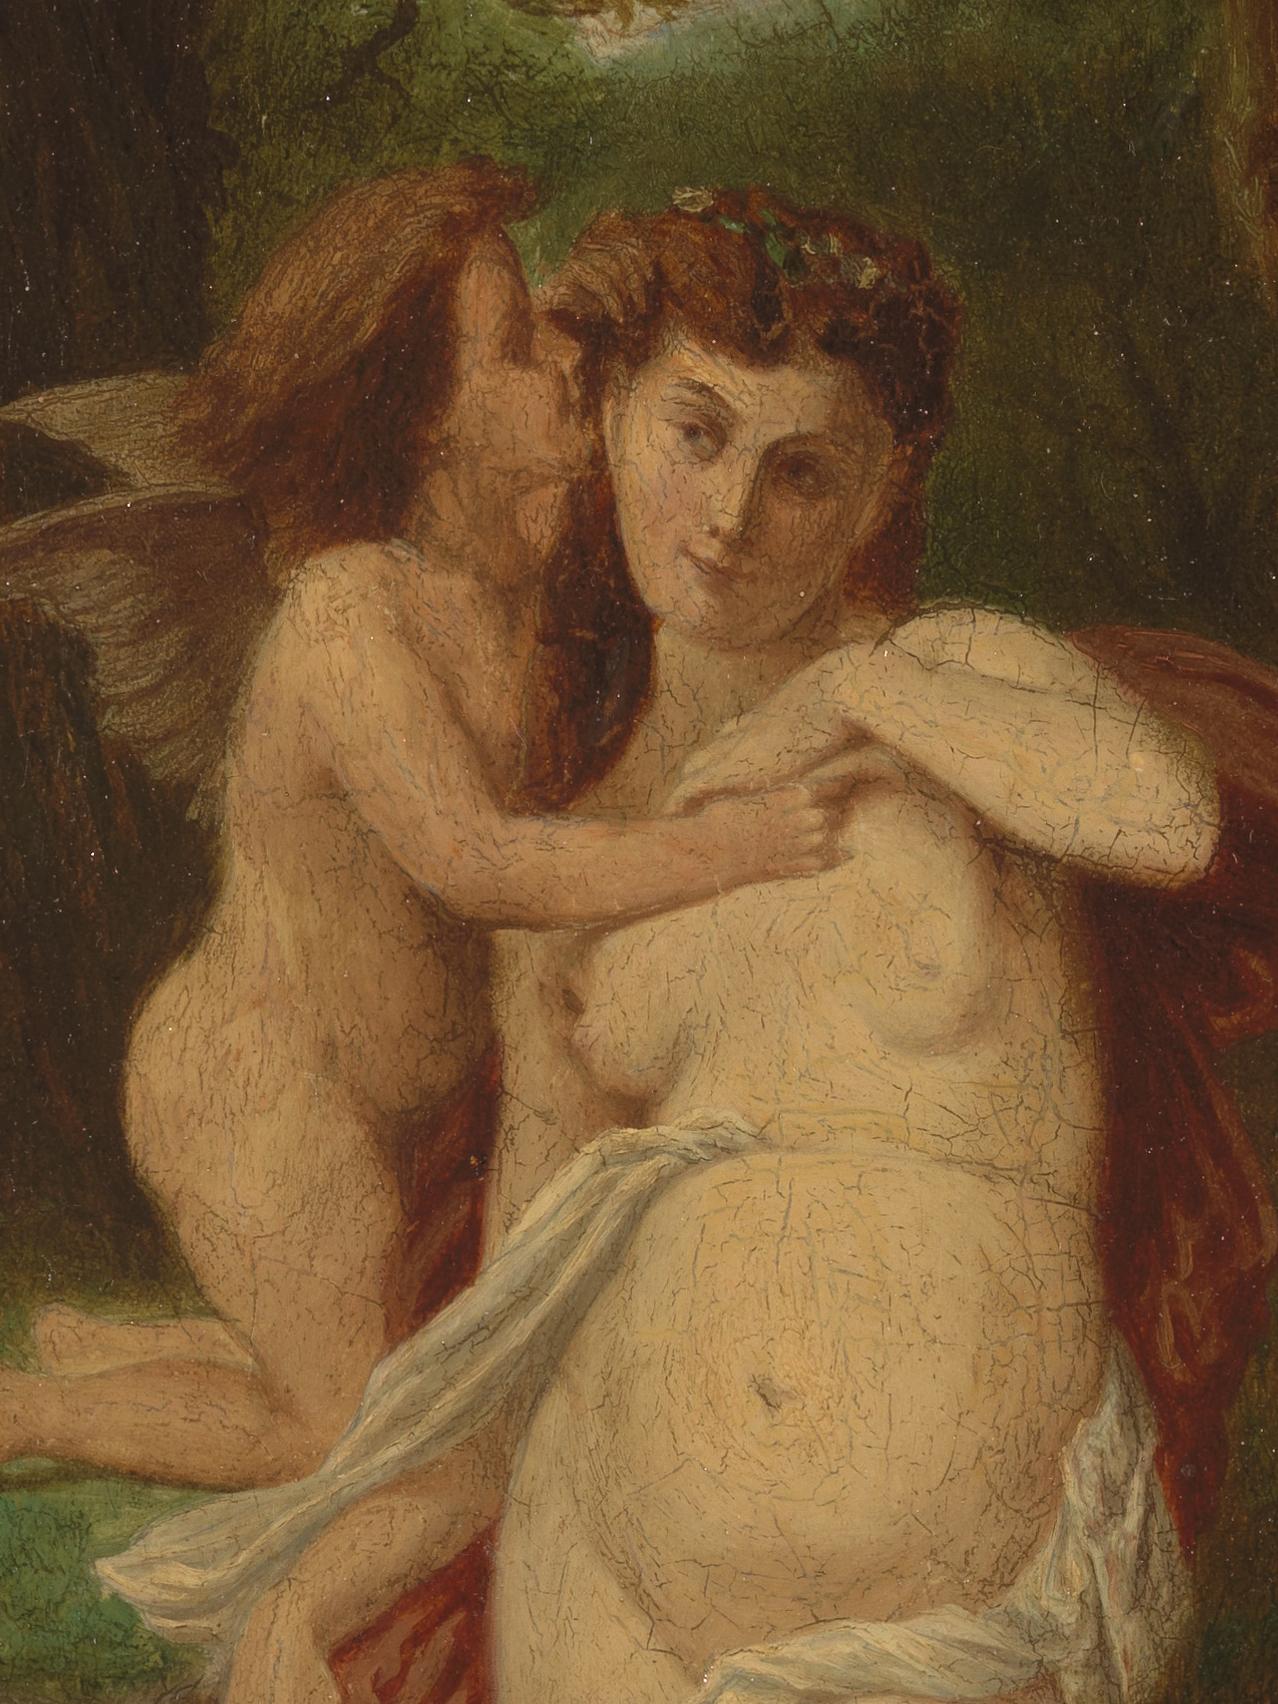 Cette huile sur toile du XIXe siècle représente le premier baiser entre Cupidon et Psyché. Il symbolise le moment d'innocence qui précède l'éveil sexuel. Les deux personnages sont nus, Psyché se trouvant à l'avant et au centre du tableau. Elle pose